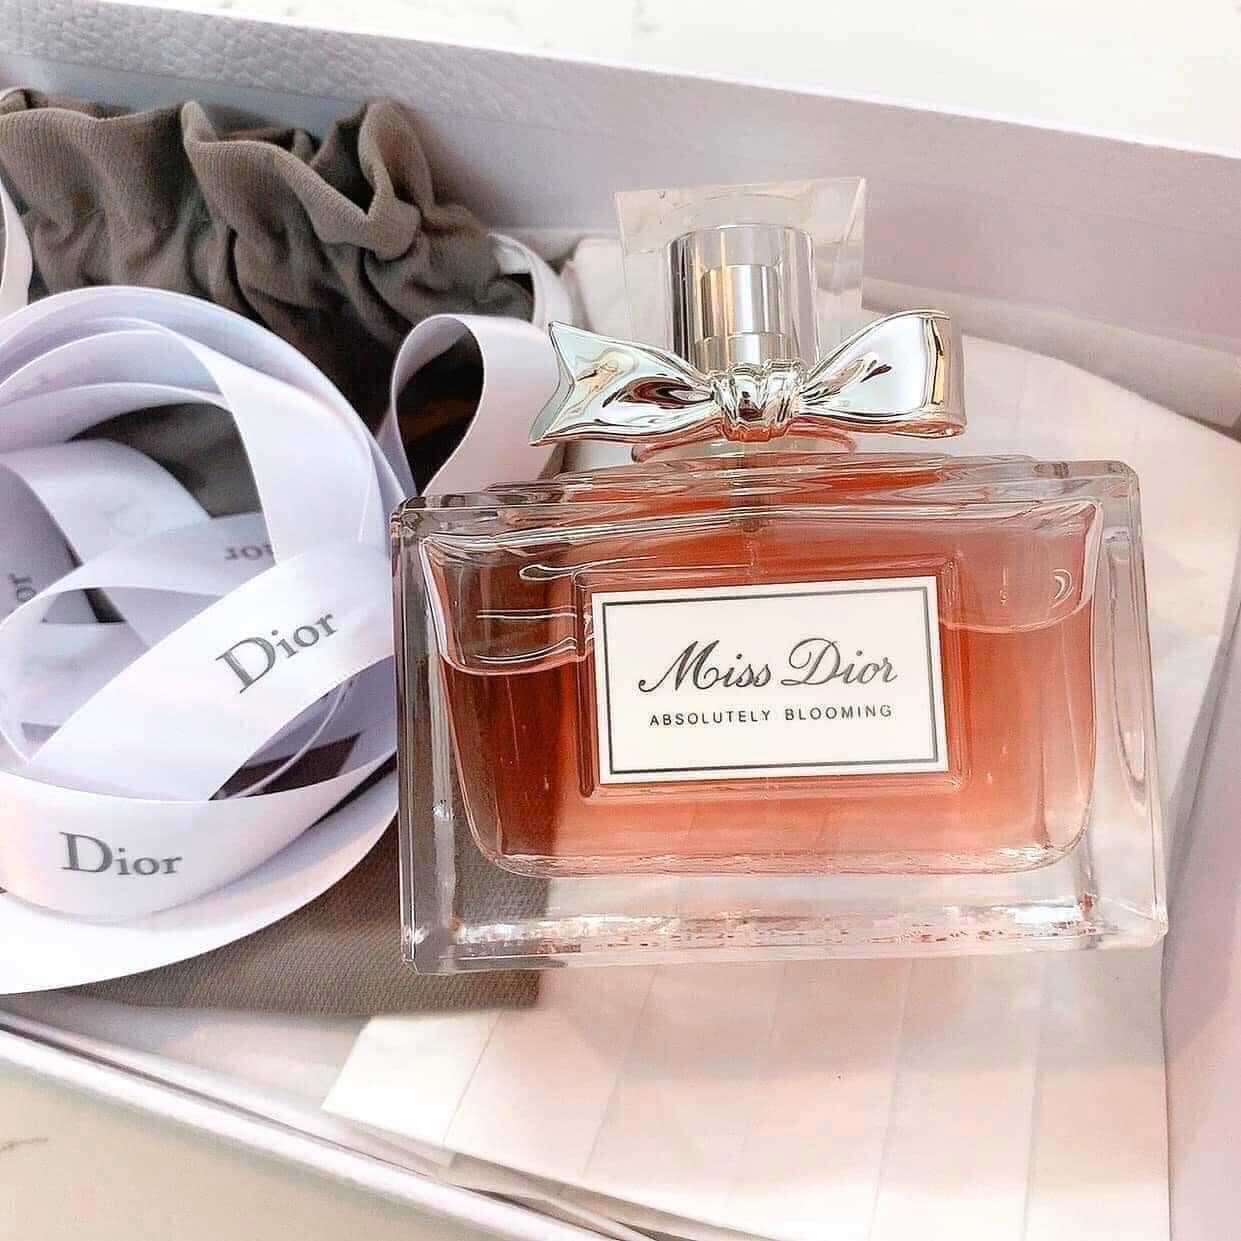 Miss Dior Absolutely Blooming 1 - Nuochoarosa.com - Nước hoa cao cấp, chính hãng giá tốt, mẫu mới